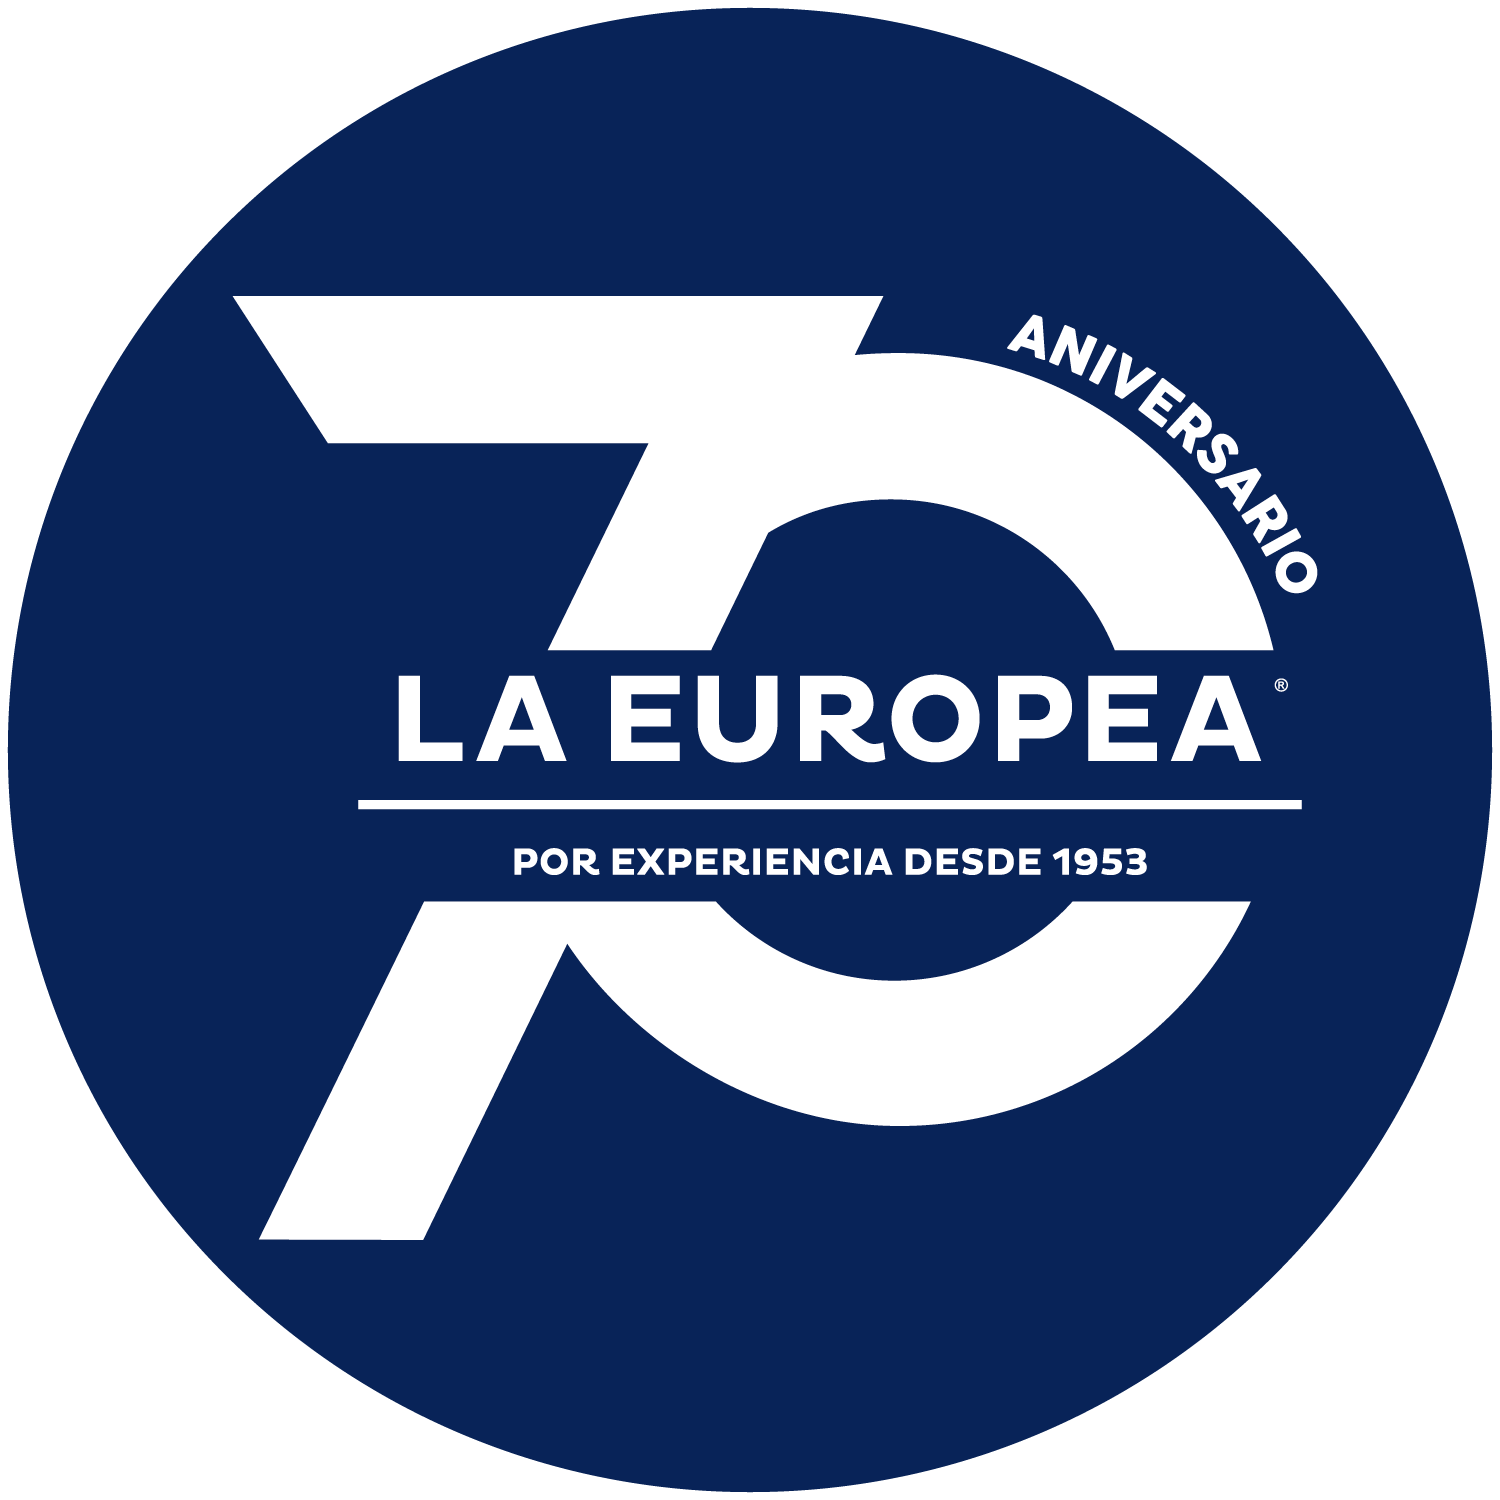 La Europea logo